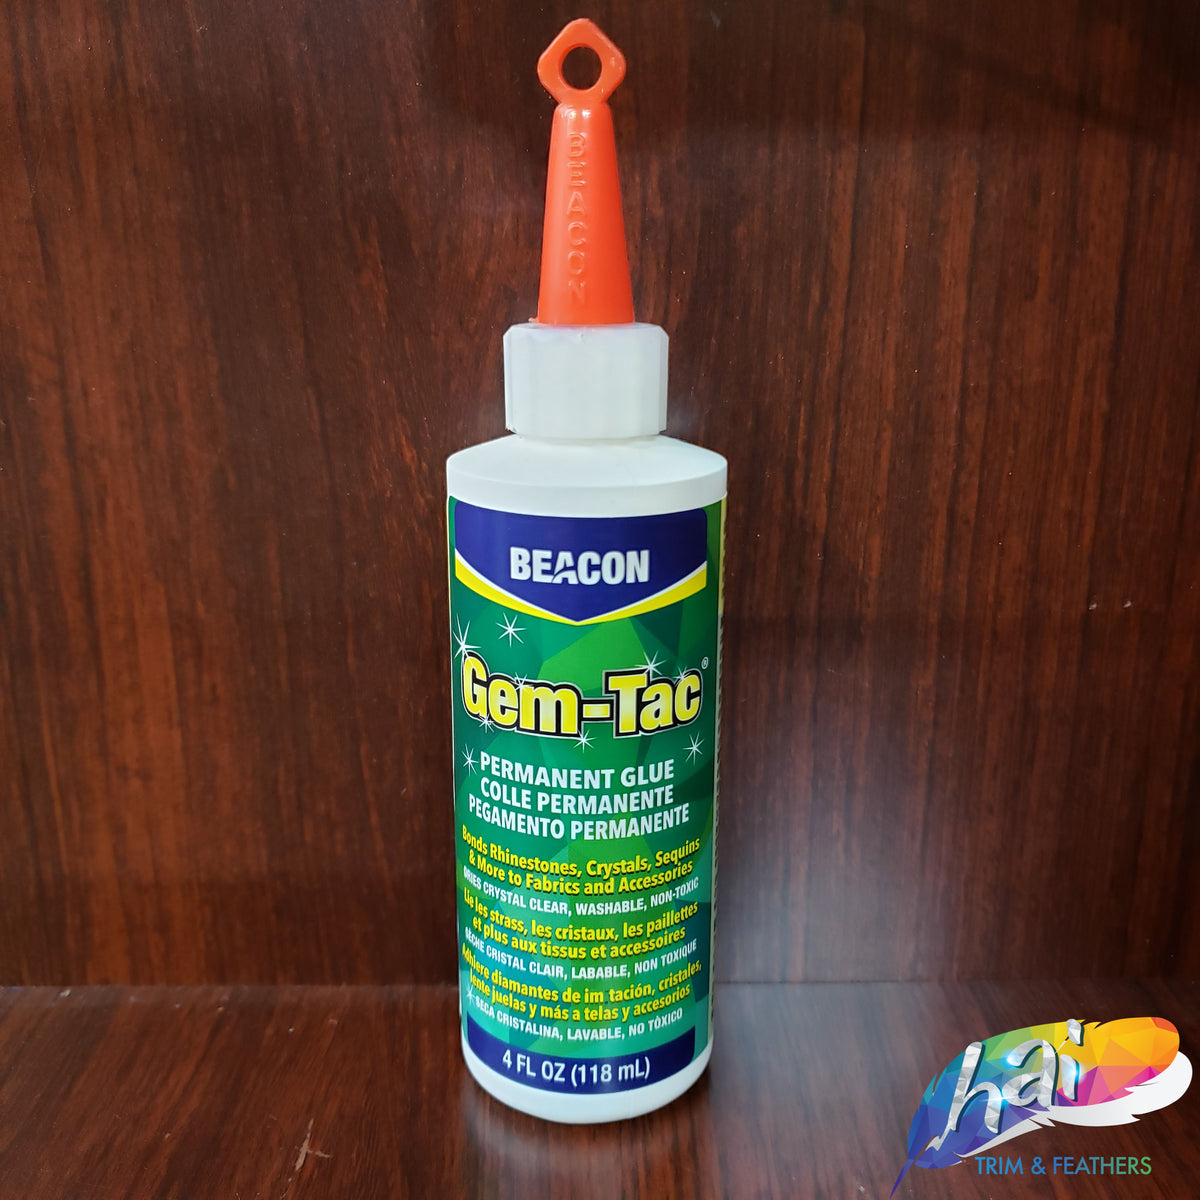 Beacon Gem Tac Permanent Glue Review